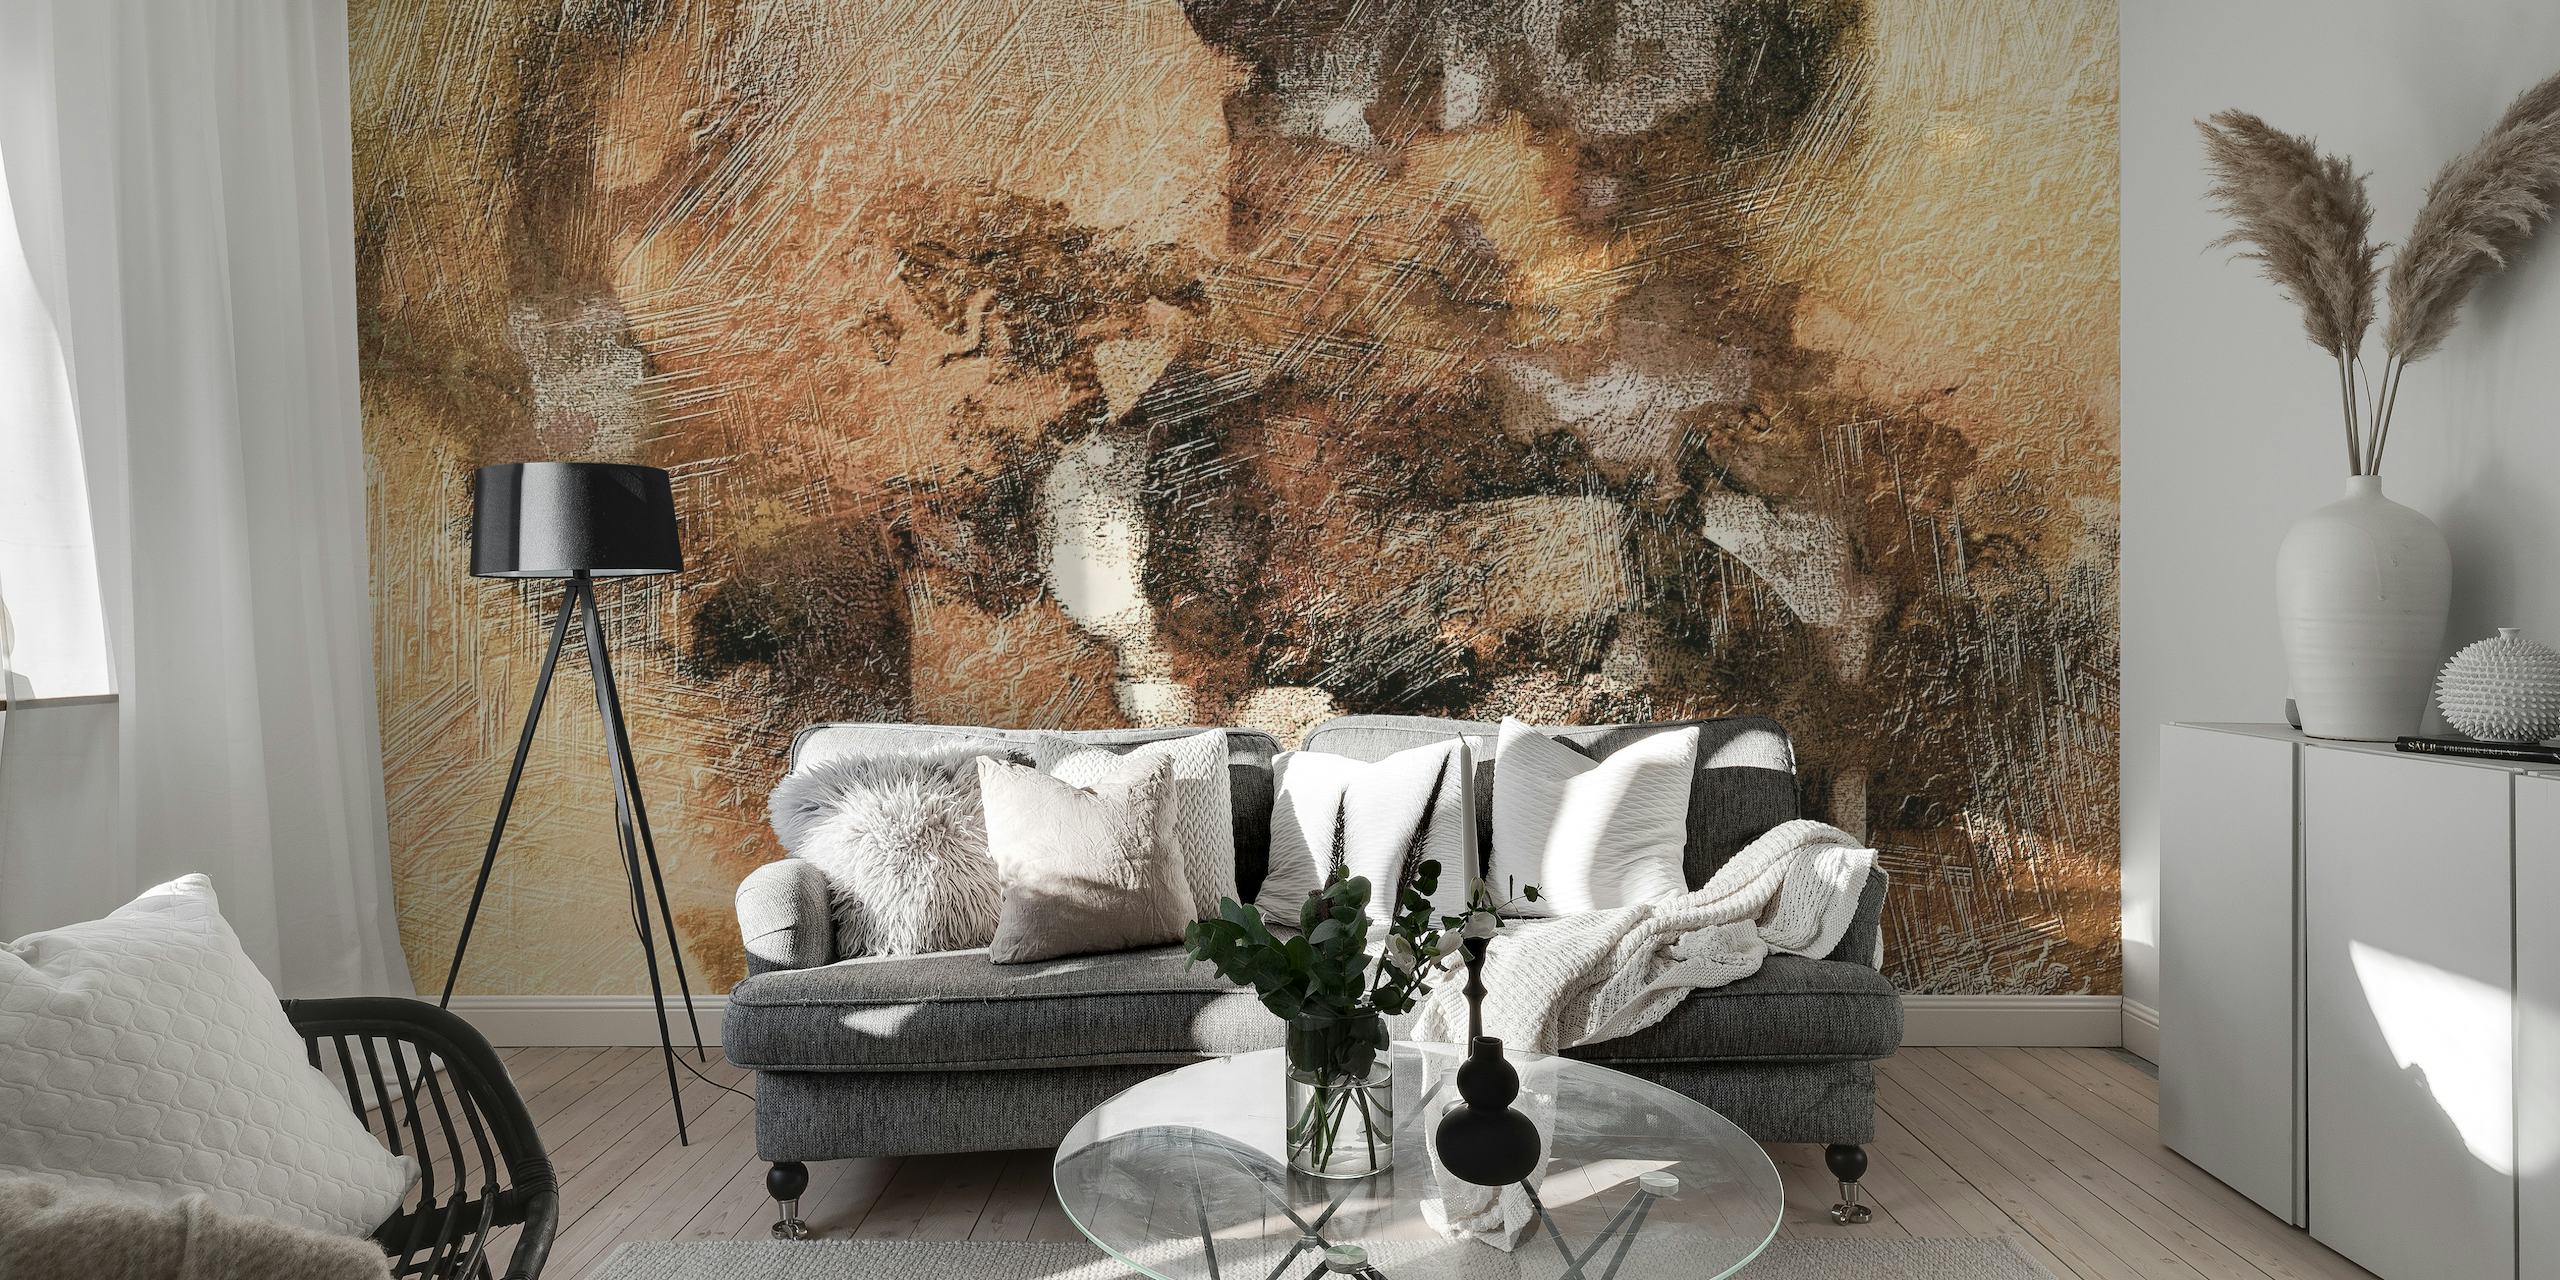 Topli metalni apstraktni zidni mural sa zemljanim i metalik tonovima u teksturalnom dizajnu